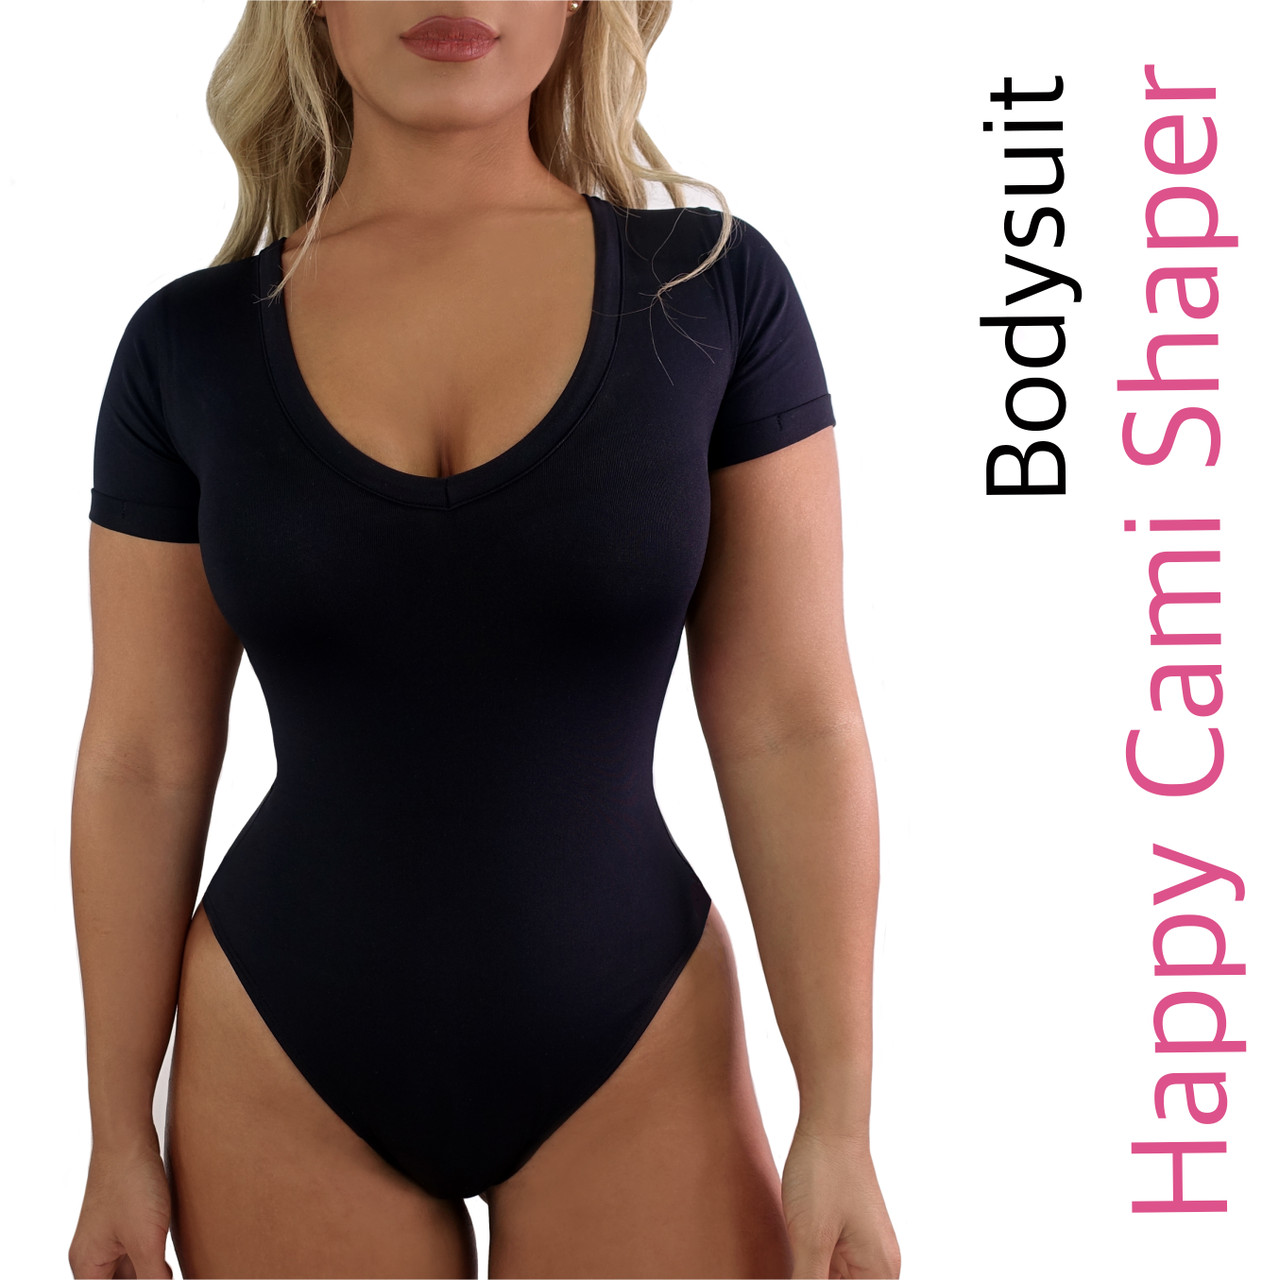 Lunia Shapewear - Nuestra camiseta control abdomen es la básica perfecta  para usar con cualquier outfit y lucir increíble, manito arriba si ya  tienes y amas la tuya 🙋🏻‍♀️ 🥰